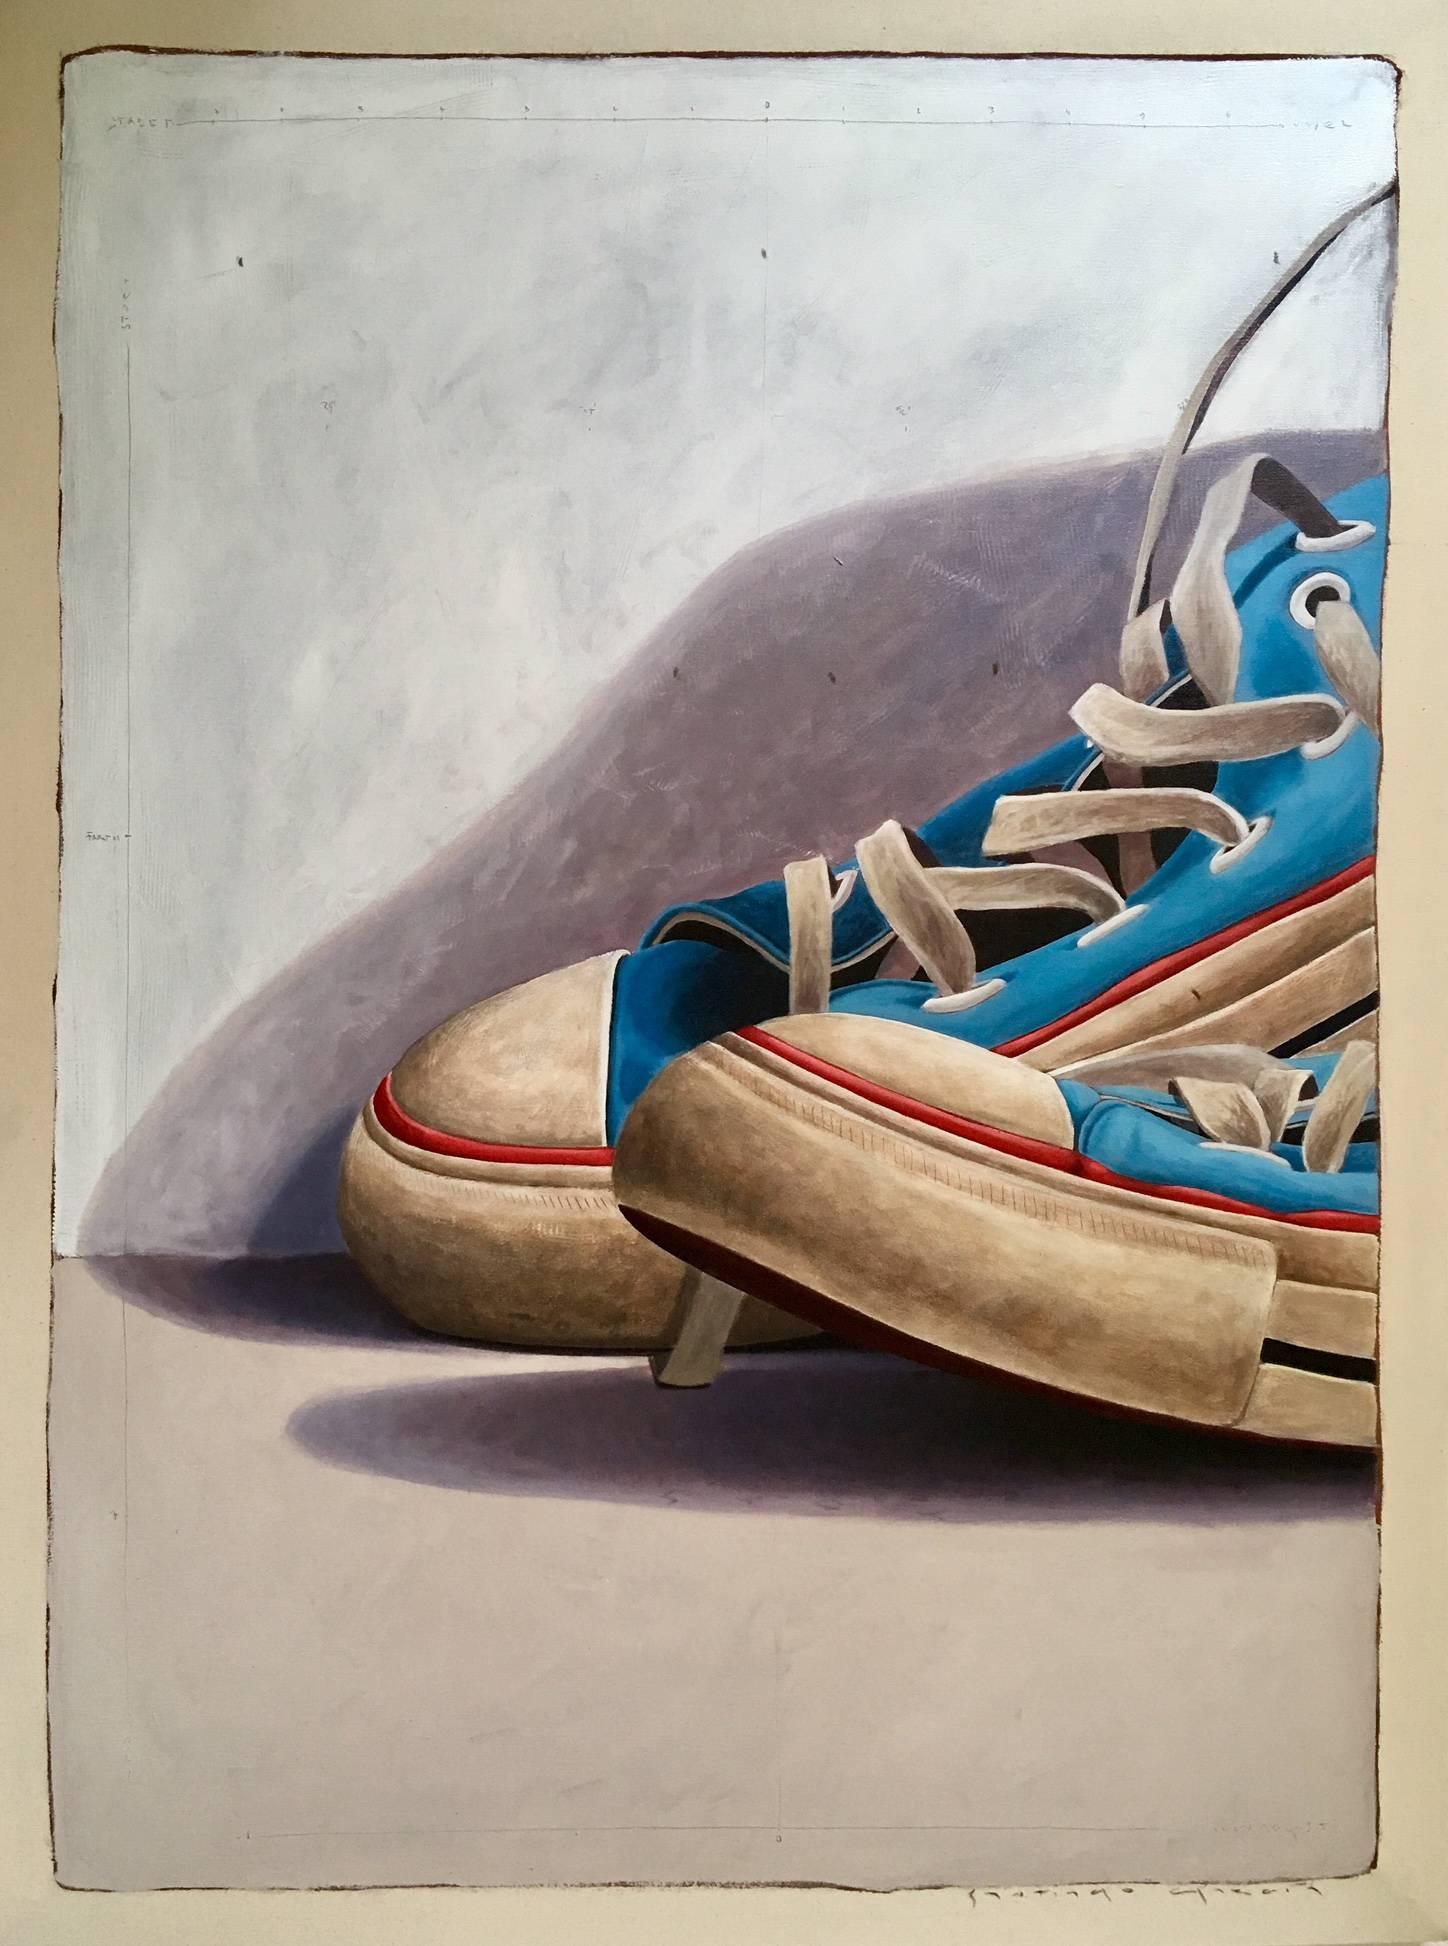 Santiago Garcia Still-Life Painting – Großformatiges Ölgemälde in Kurzform mit abgeschnittenen blauen Converse-Turnschuhen „#1025“